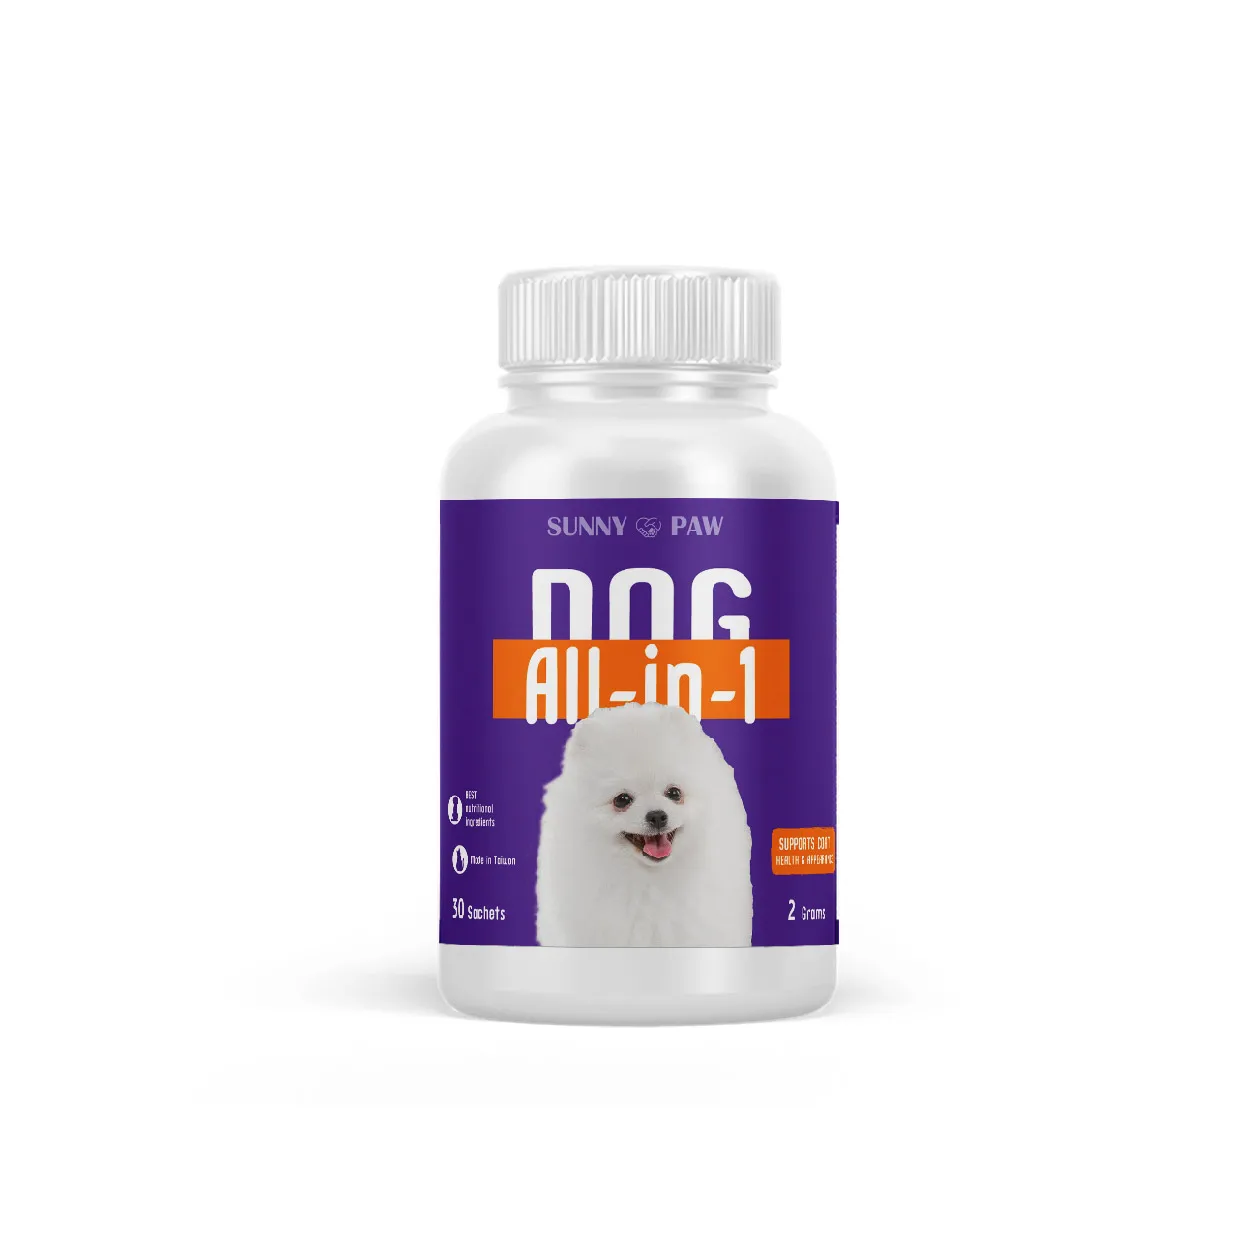 can dogs take vitamin b